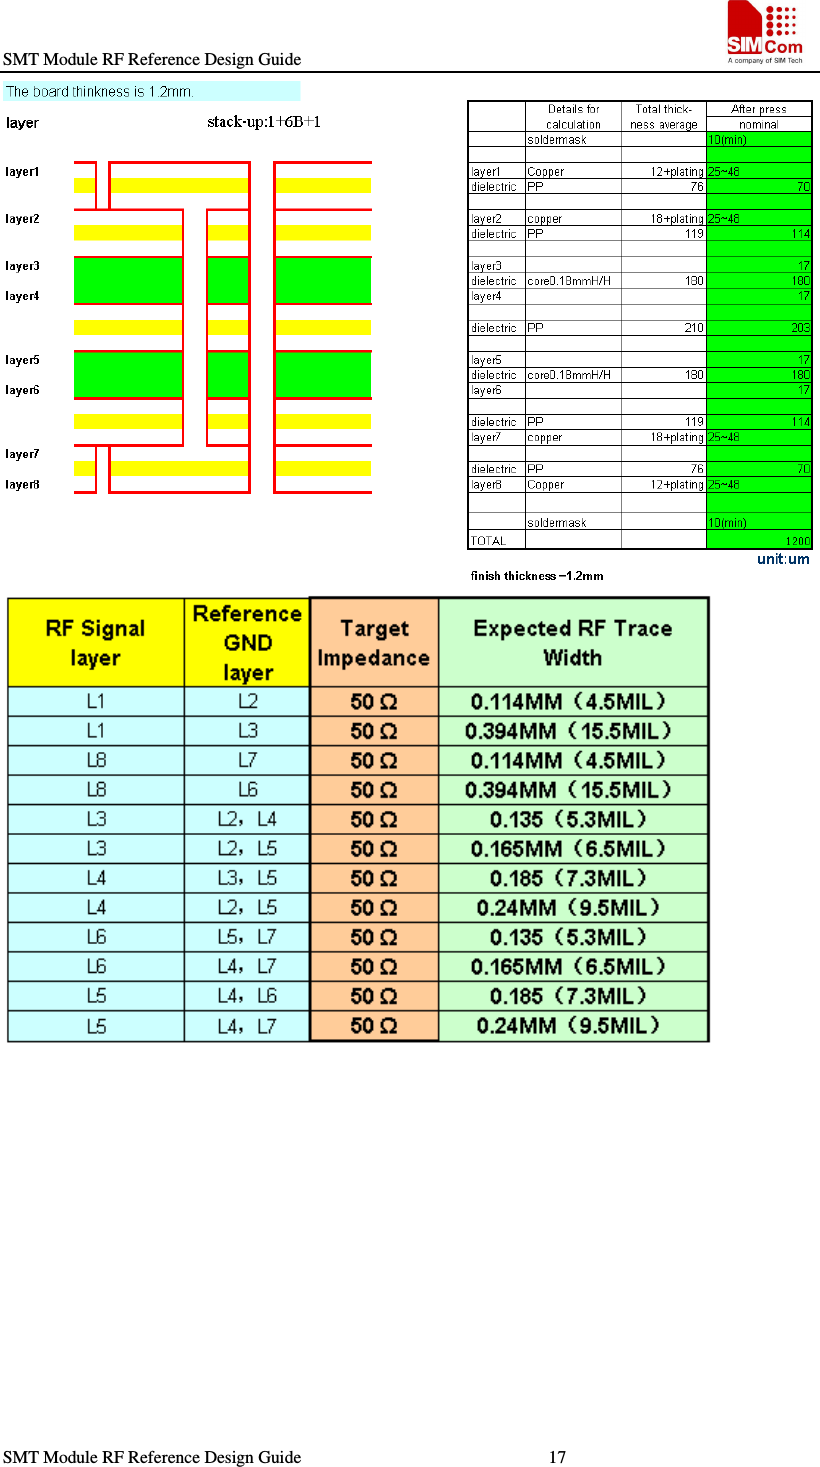 SMT Module RF Reference Design Guide                                                    SMT Module RF Reference Design Guide                                                        17                                                                     